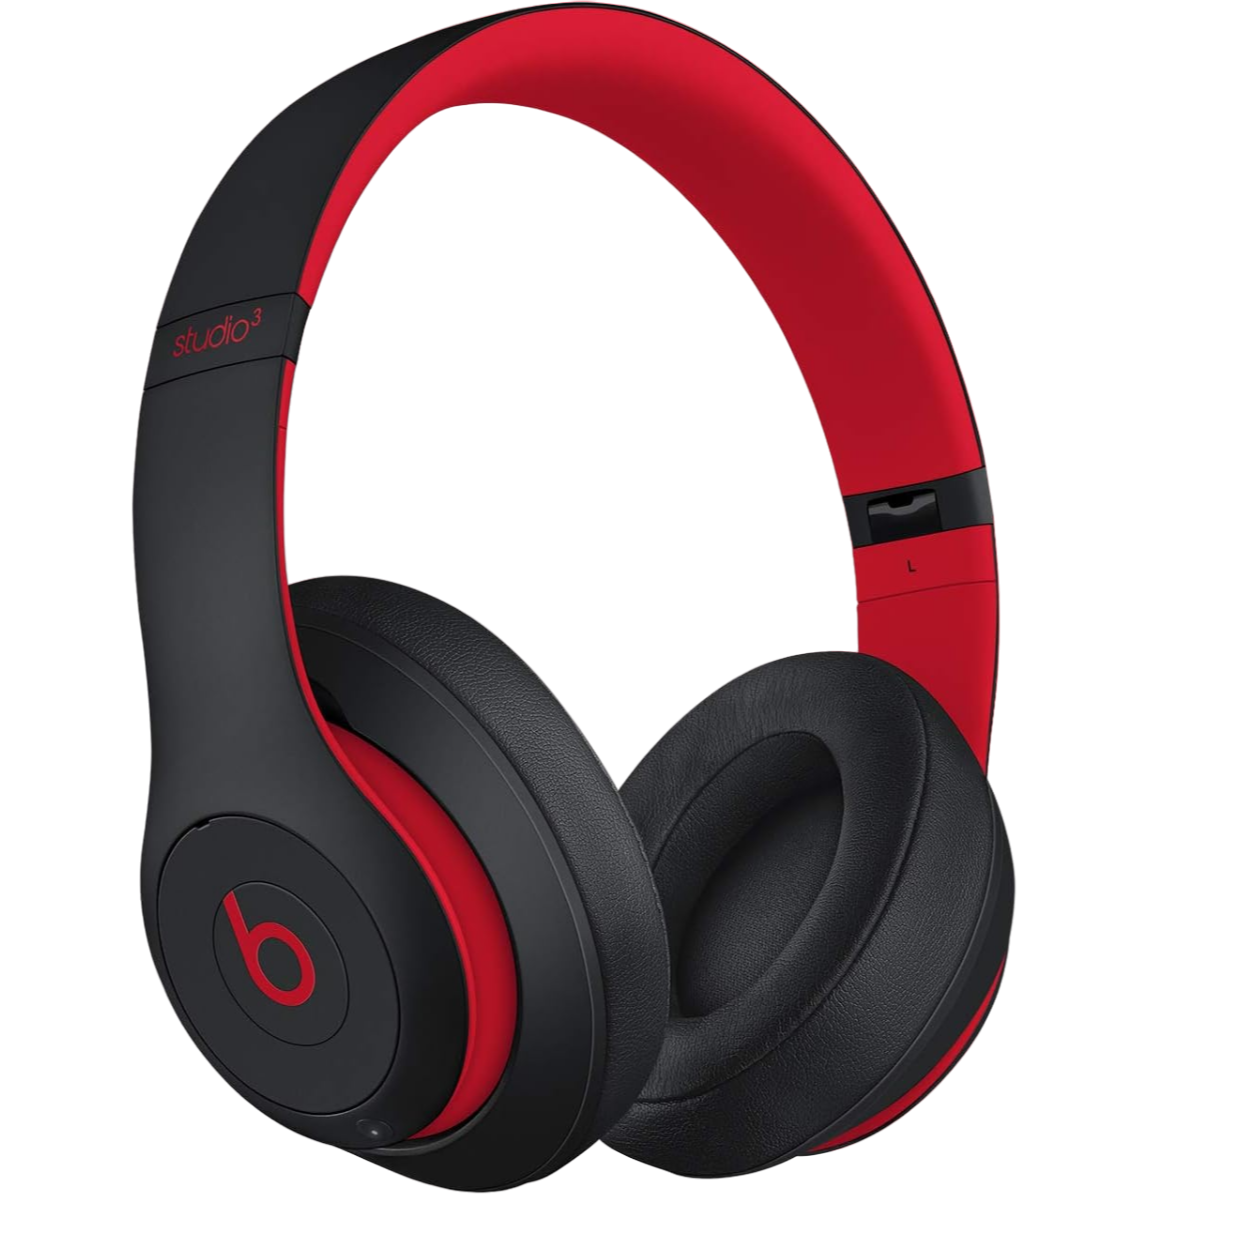 amazon, estos audífonos beats studio 3 son ideales para regalar a los fanáticos del buen audio y están a mitad de precio en amazon méxico